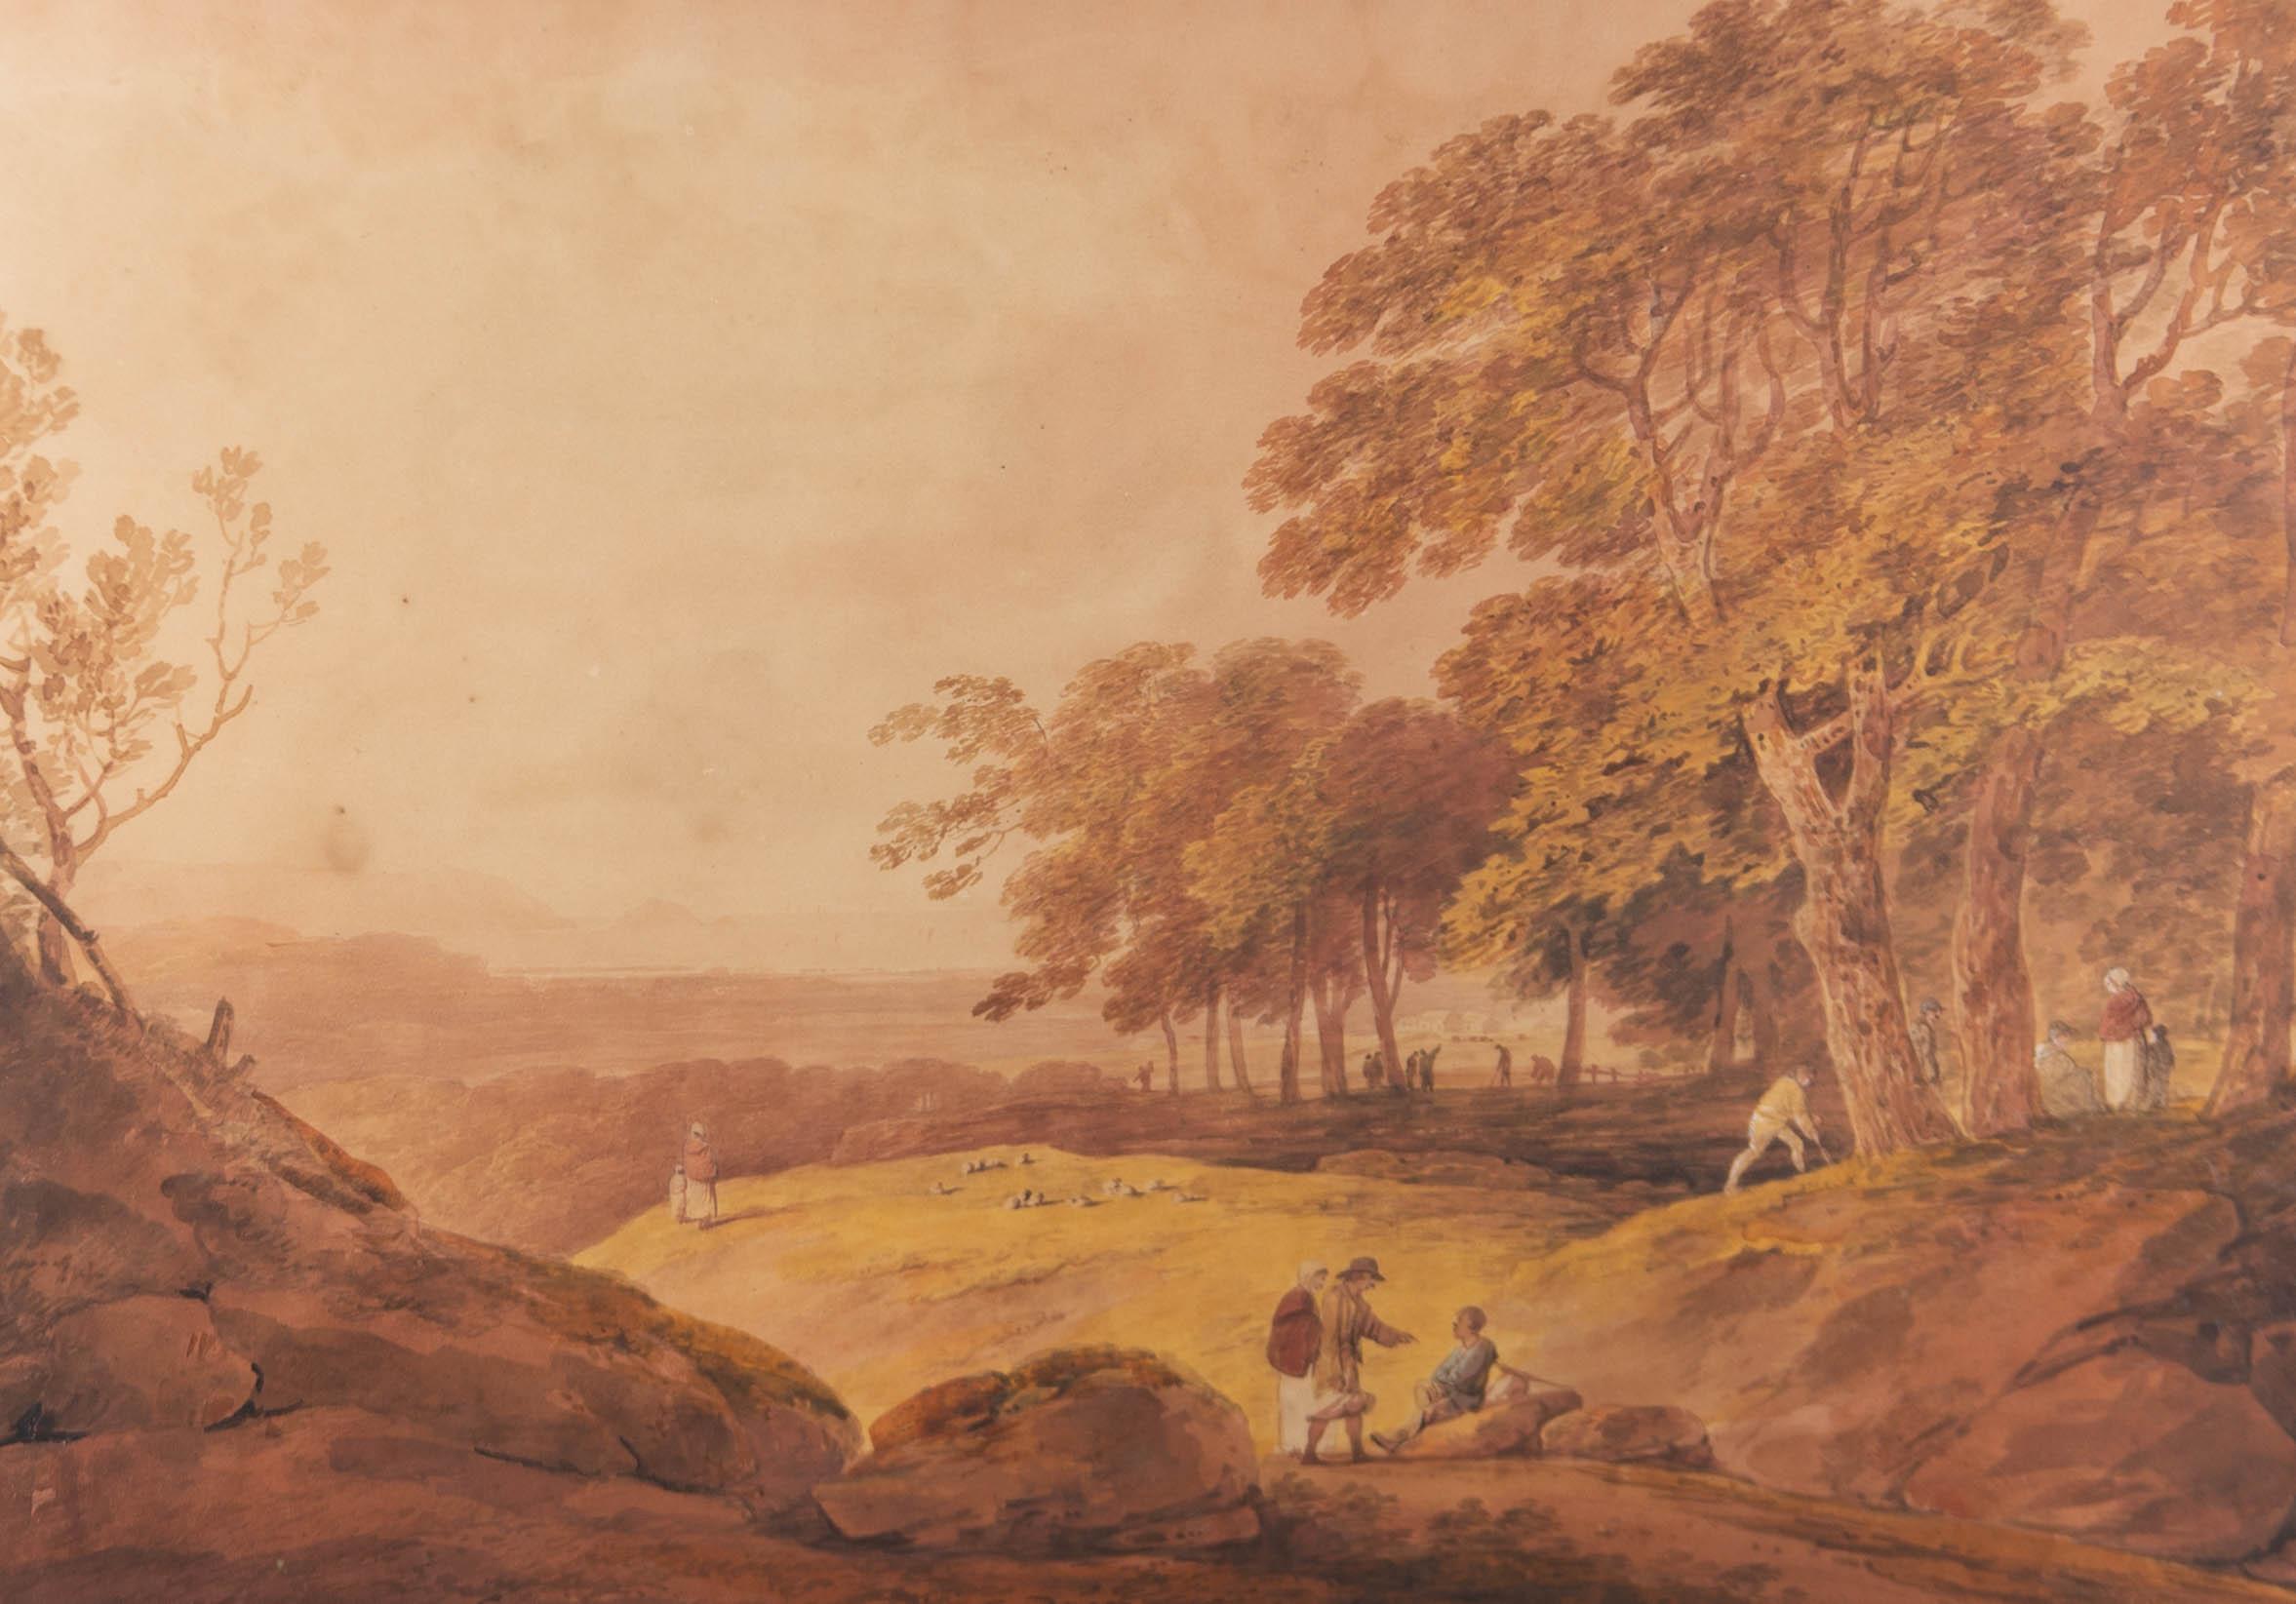 Aquarell-Aquarell des frühen 19. Jahrhunderts - Panoramiklandschaft mit Figuren – Art von Unknown